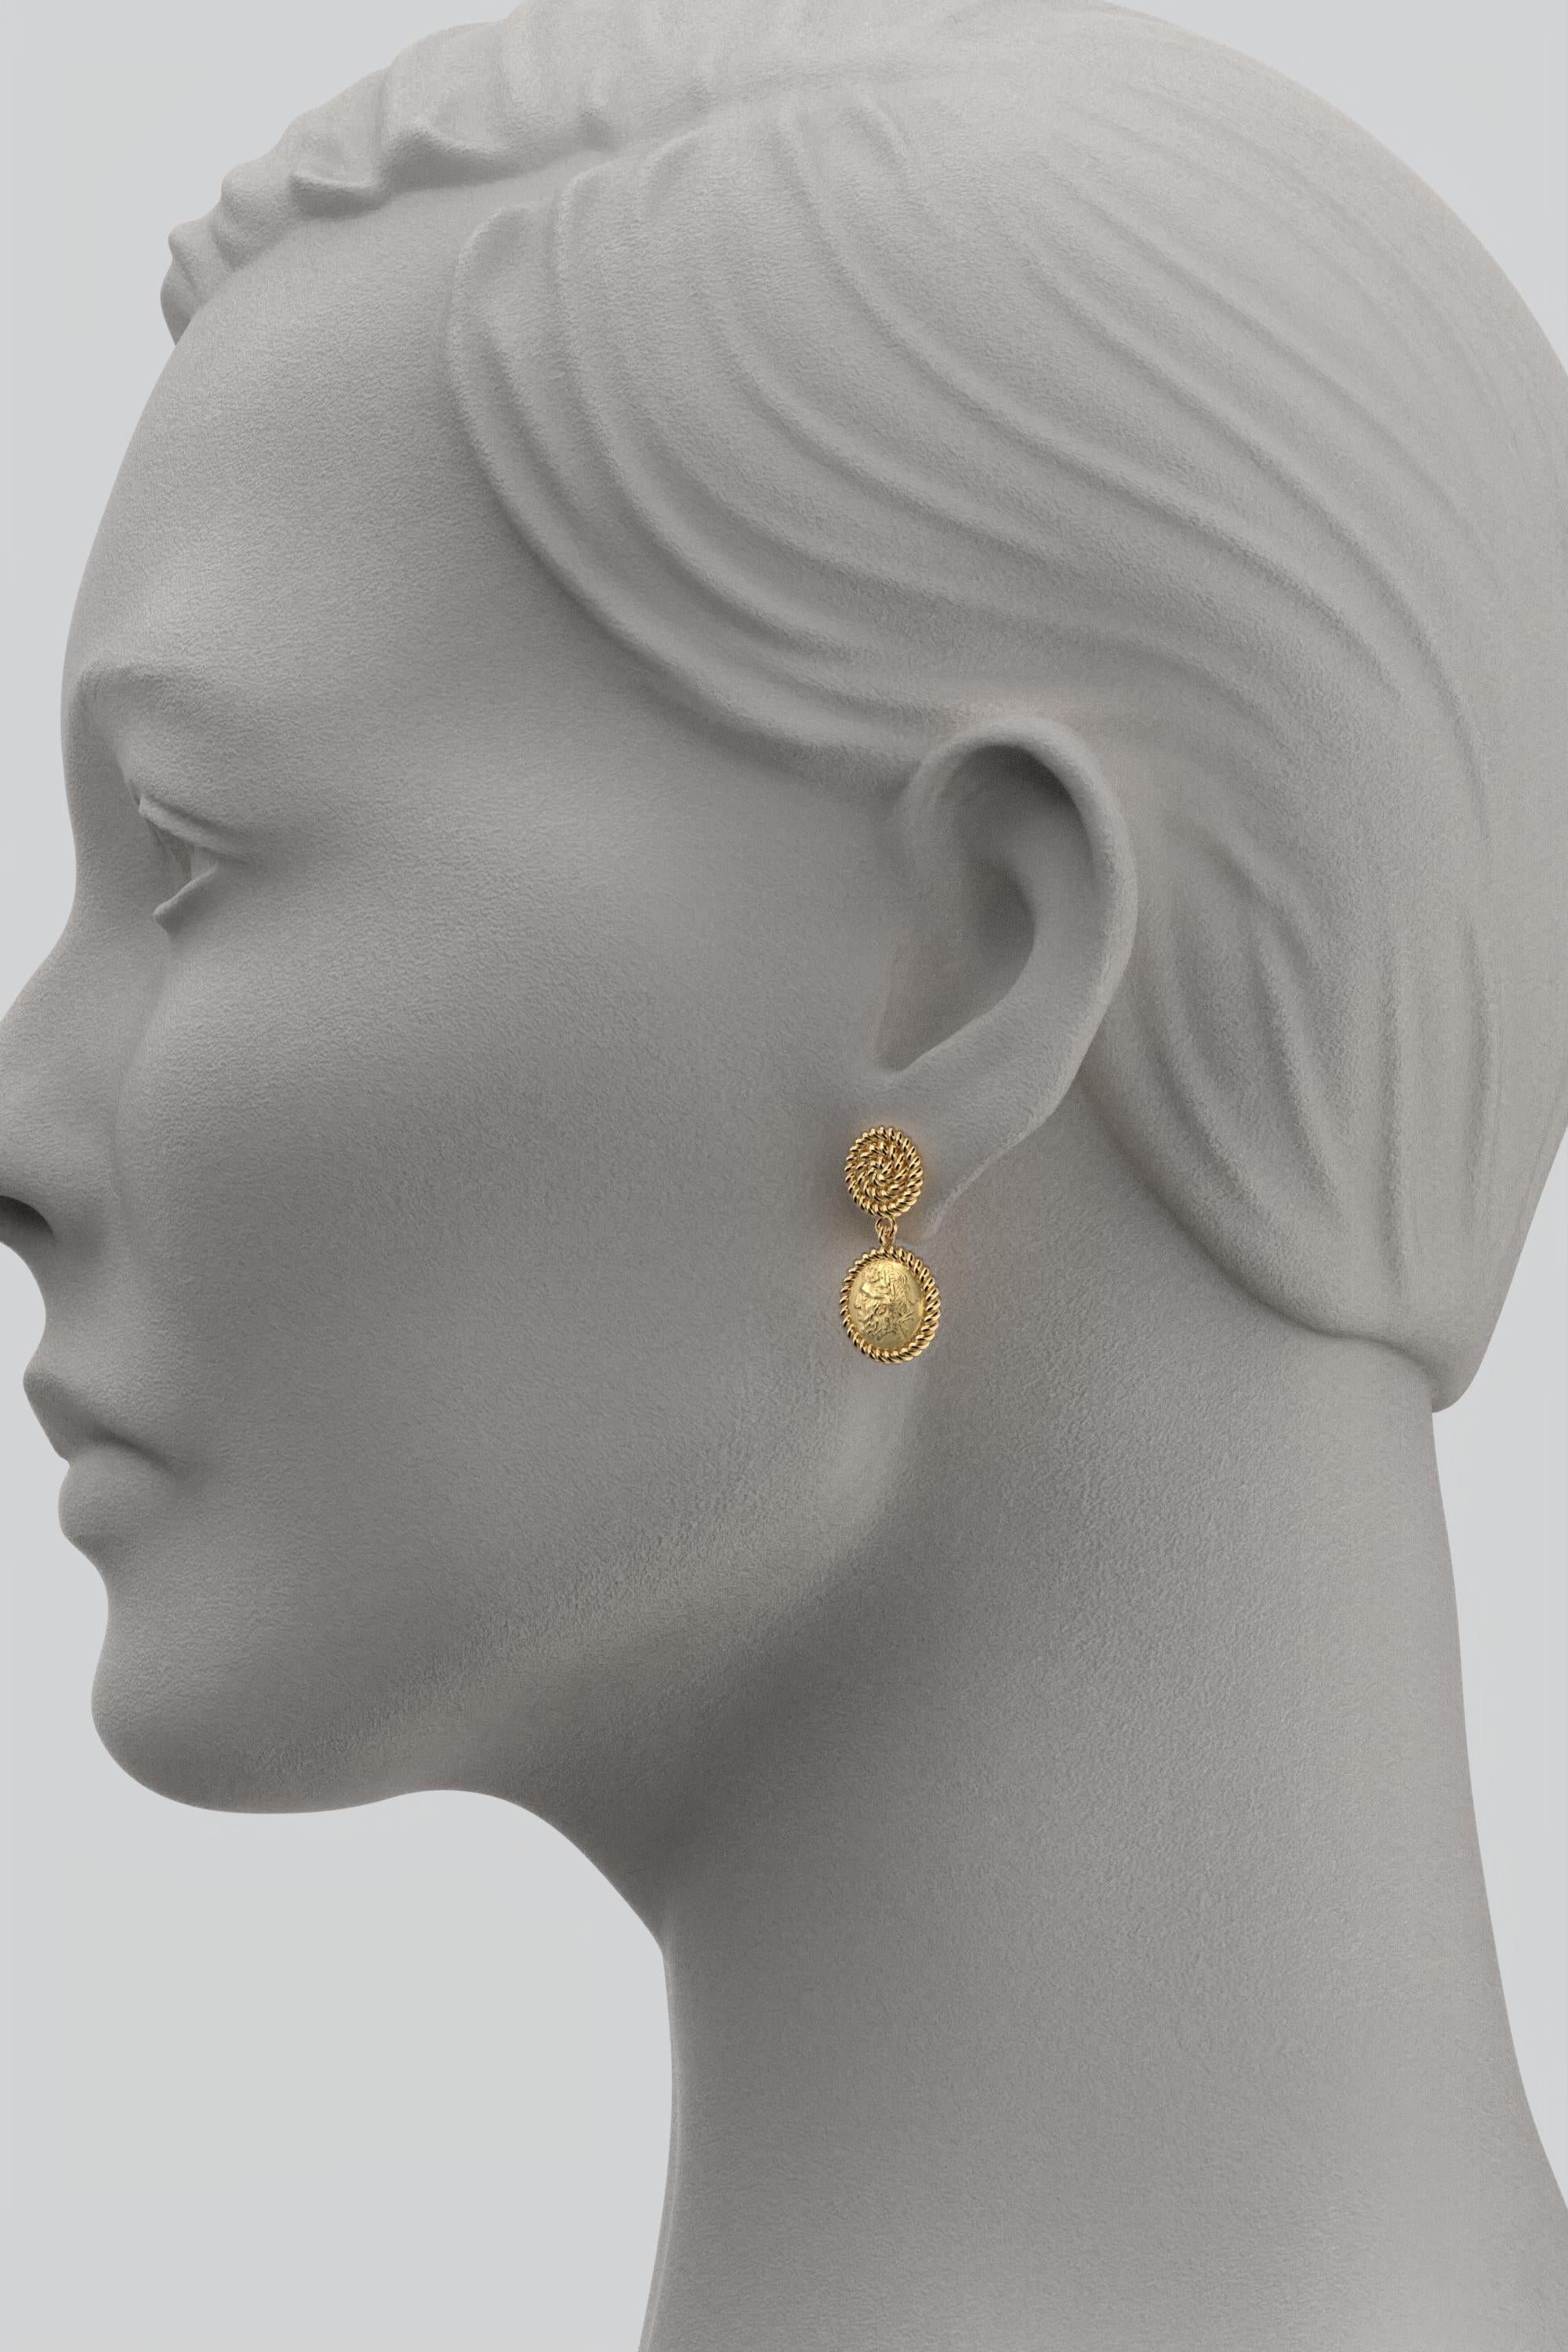 greek style earrings